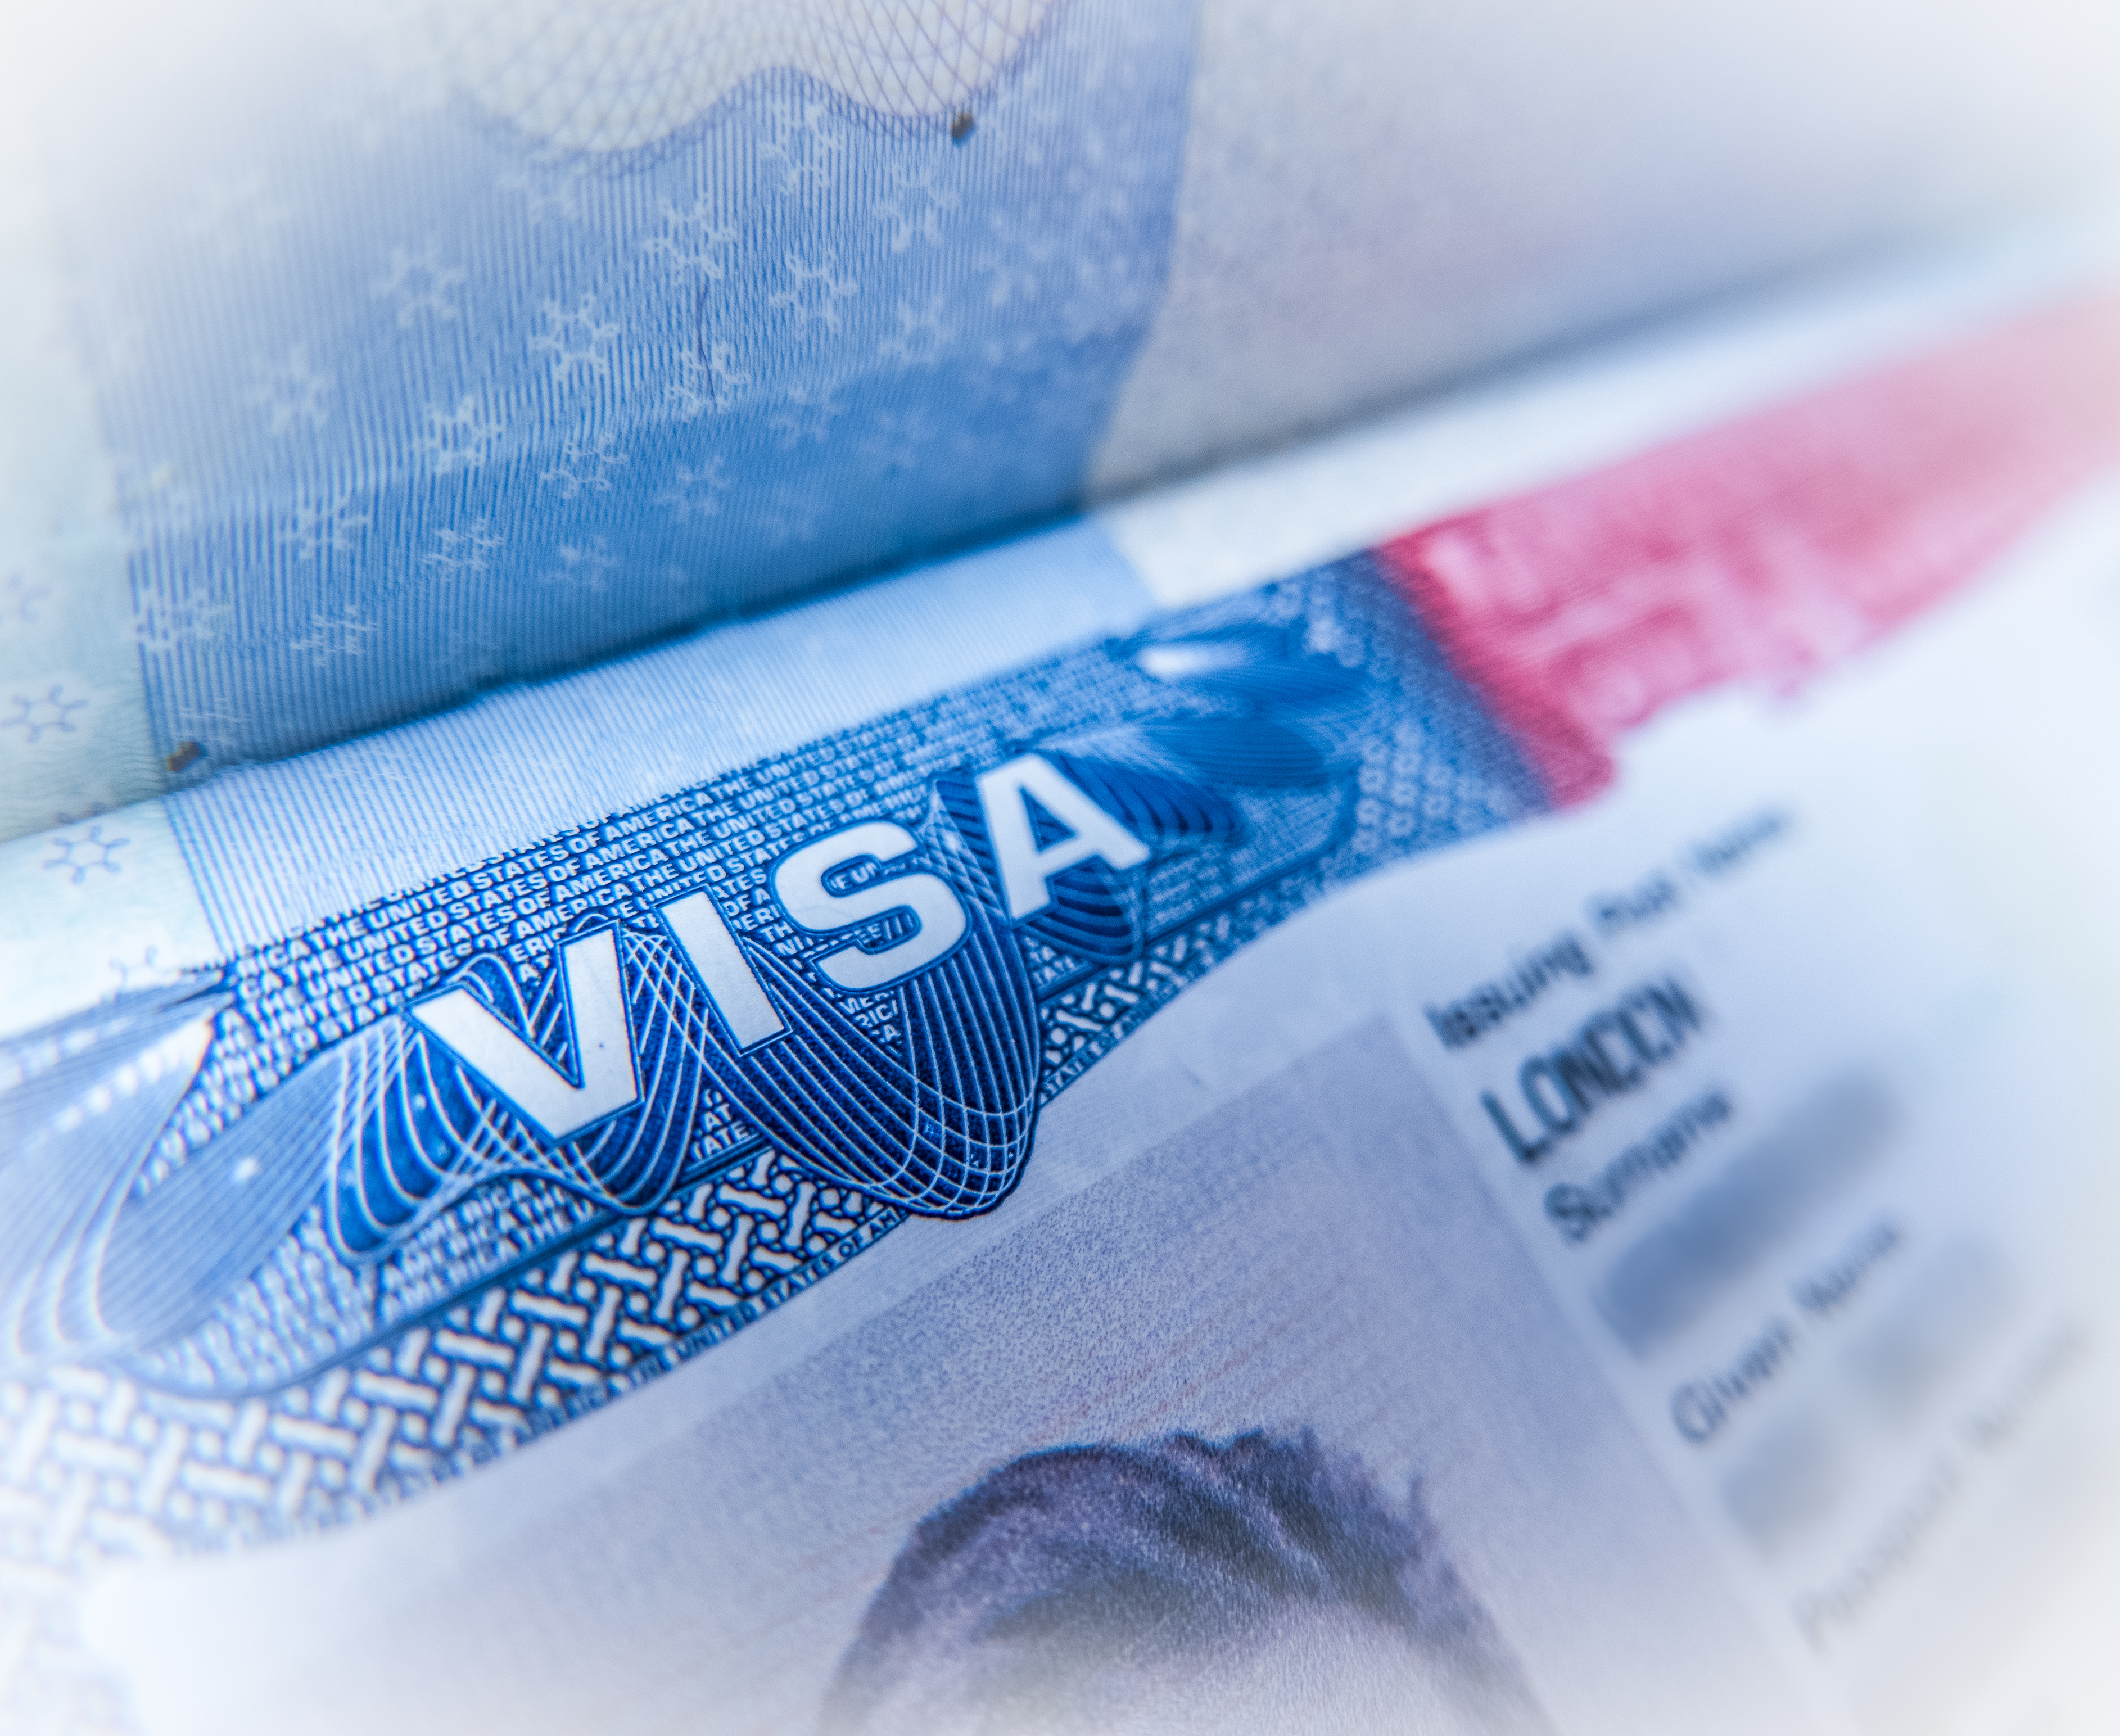 Comment Faire Refaire Un Passeport En Urgence Skyscanner